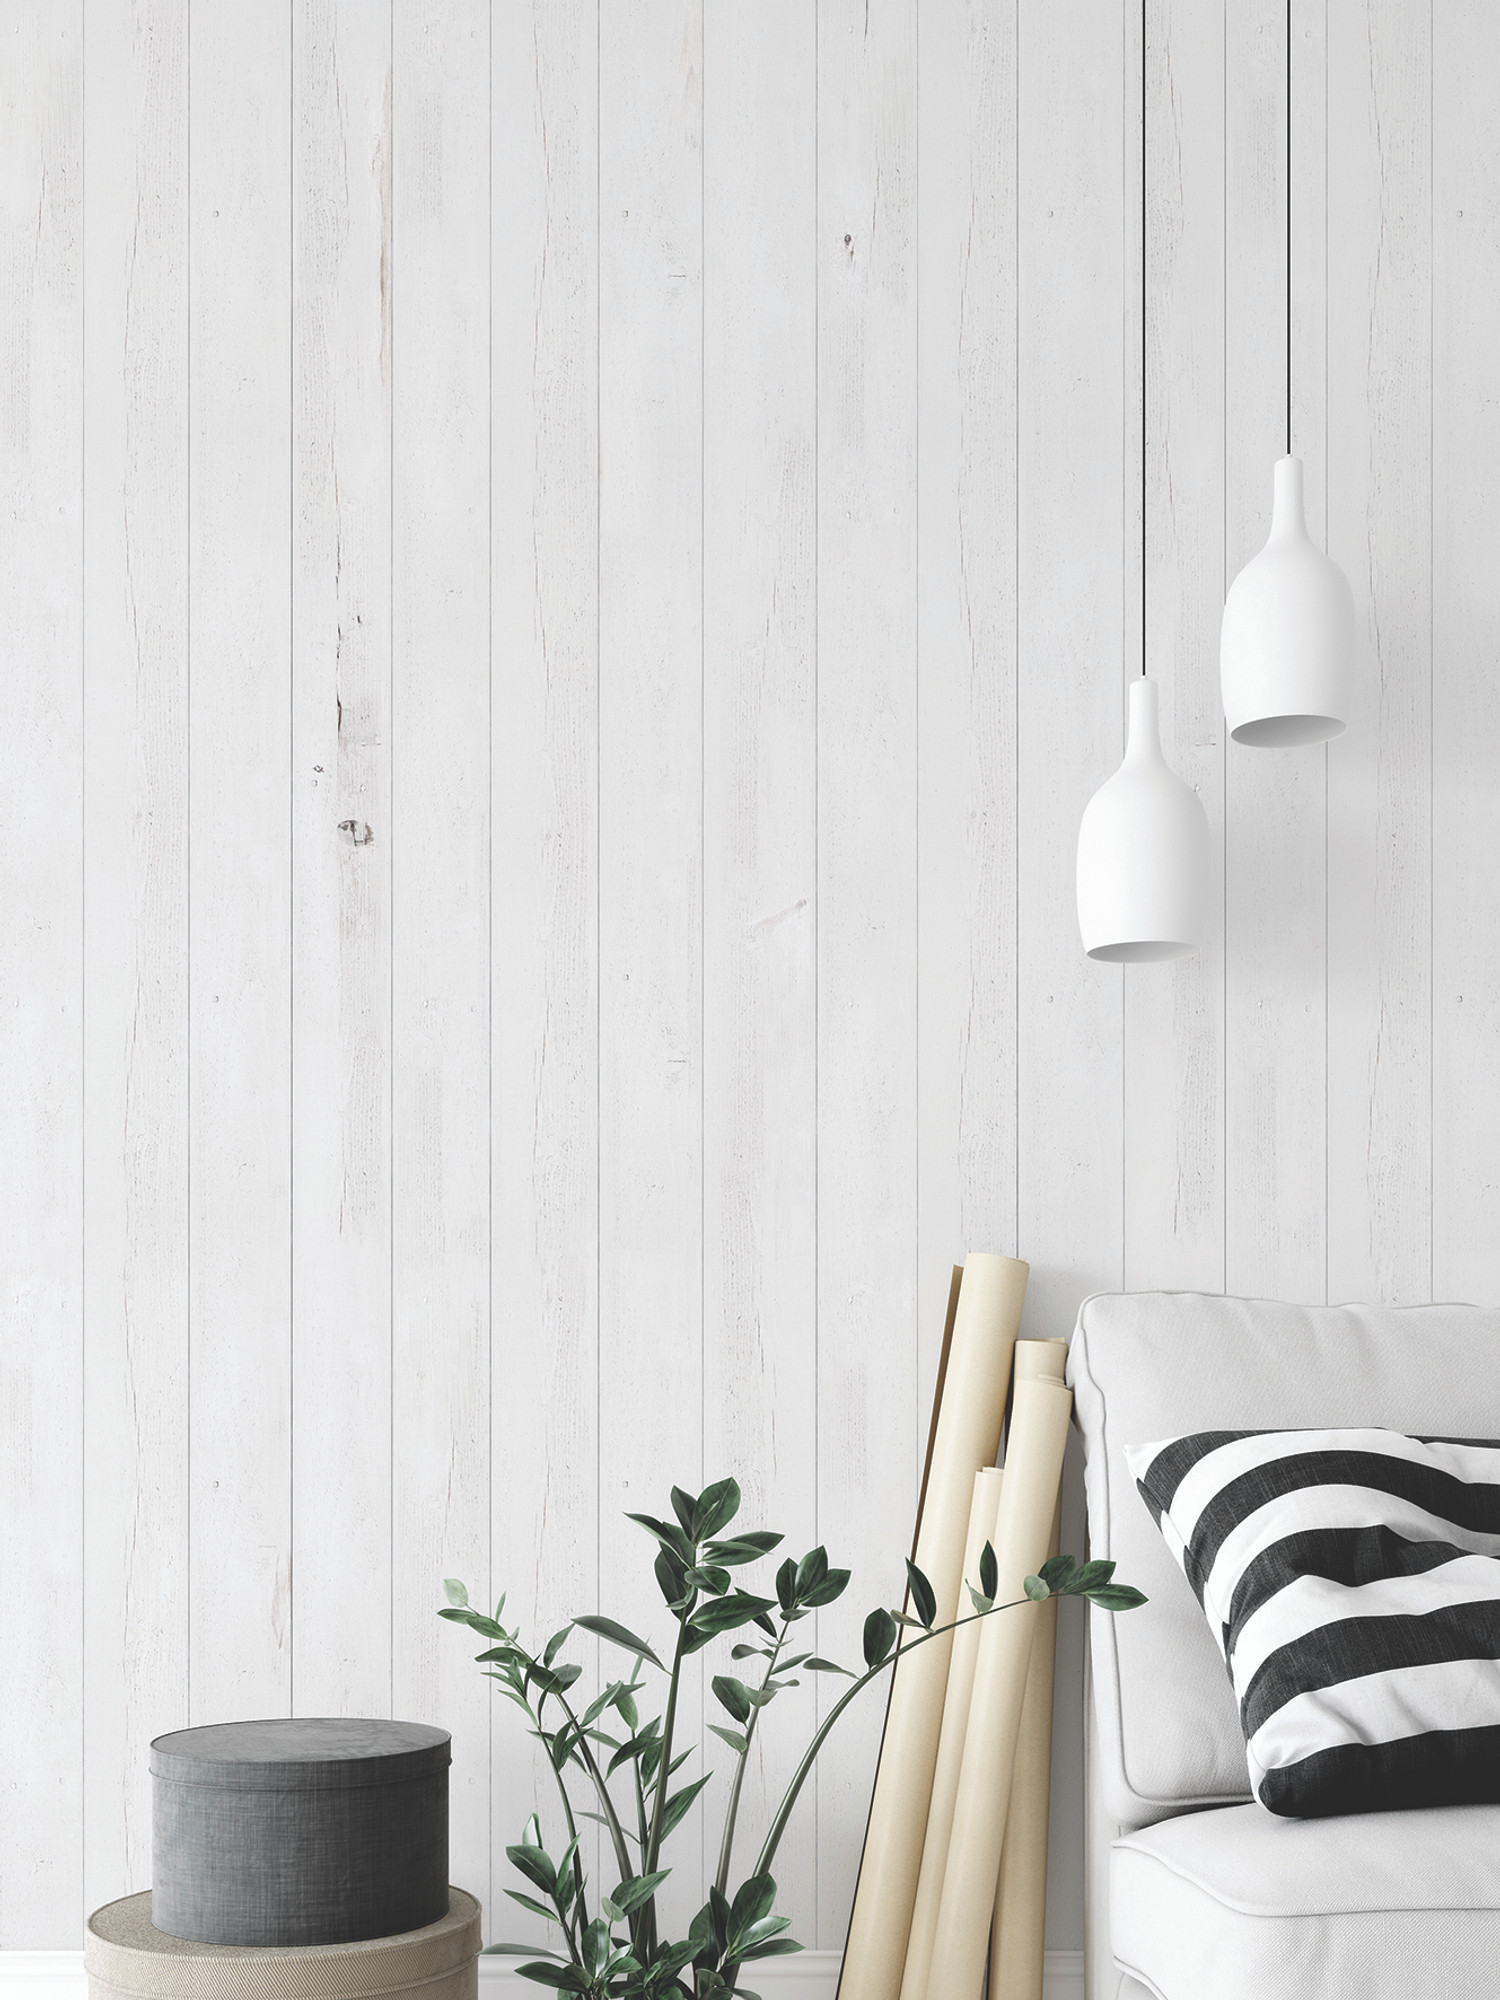 Giấy dán tường vân gỗ ngang sẽ cho phép bạn tạo ra một không gian mang phong cách tự nhiên và ấm áp. Nếu bạn đang muốn tìm kiếm một cách để trang trí tường, hình ảnh chắc chắn sẽ giúp bạn thấy rõ hơn những đặc tính và tính năng của giấy dán tường này.